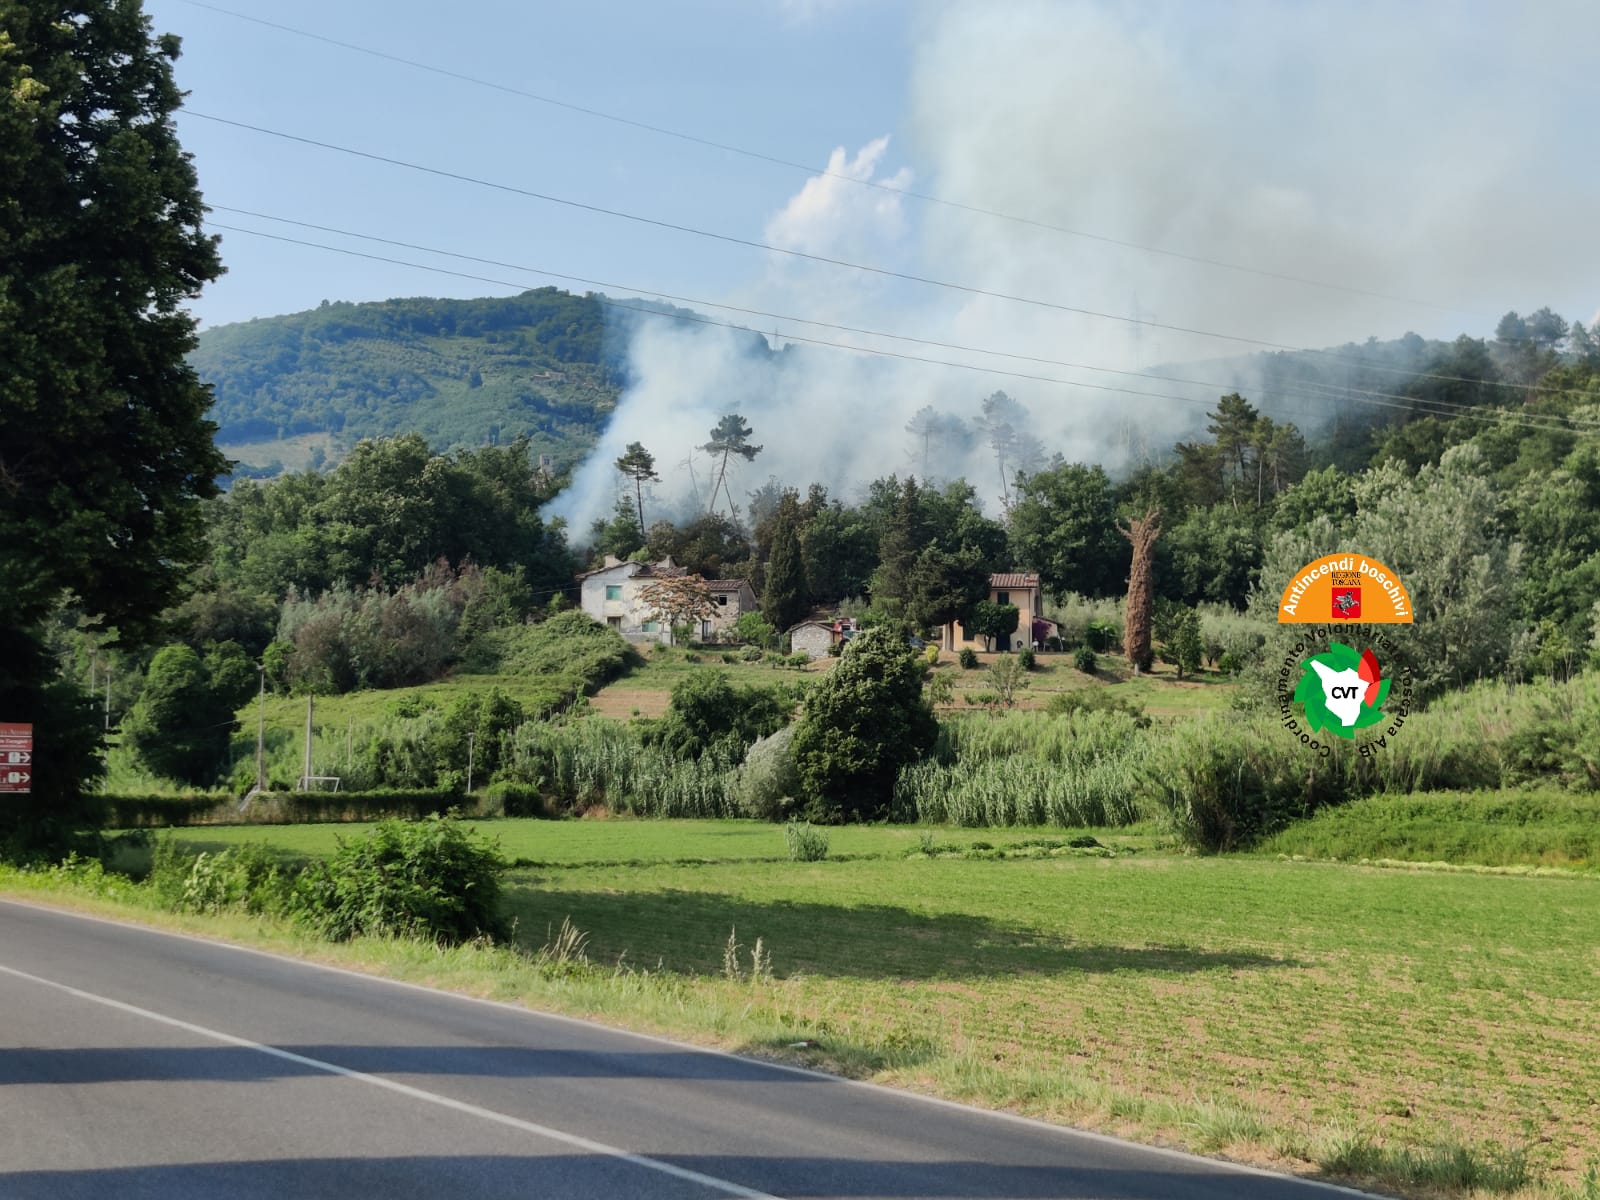 Incendio in corso in località Fornace nel comune di Lucca, due elico...